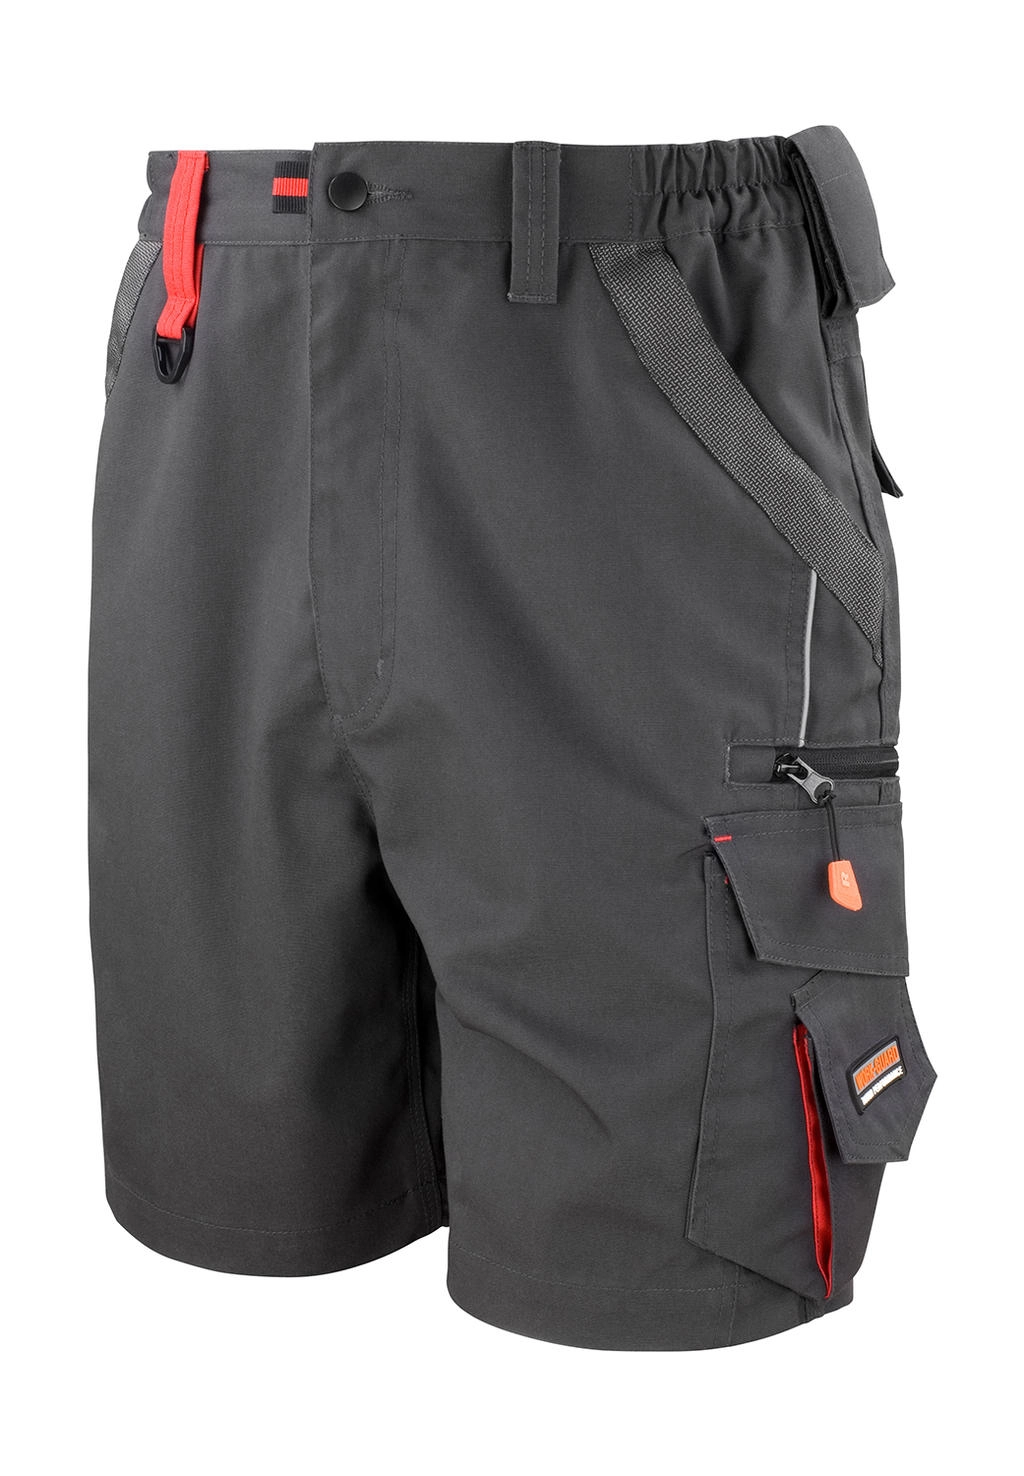 Work-Guard Technical Shorts zum Besticken und Bedrucken in der Farbe Grey/Black mit Ihren Logo, Schriftzug oder Motiv.